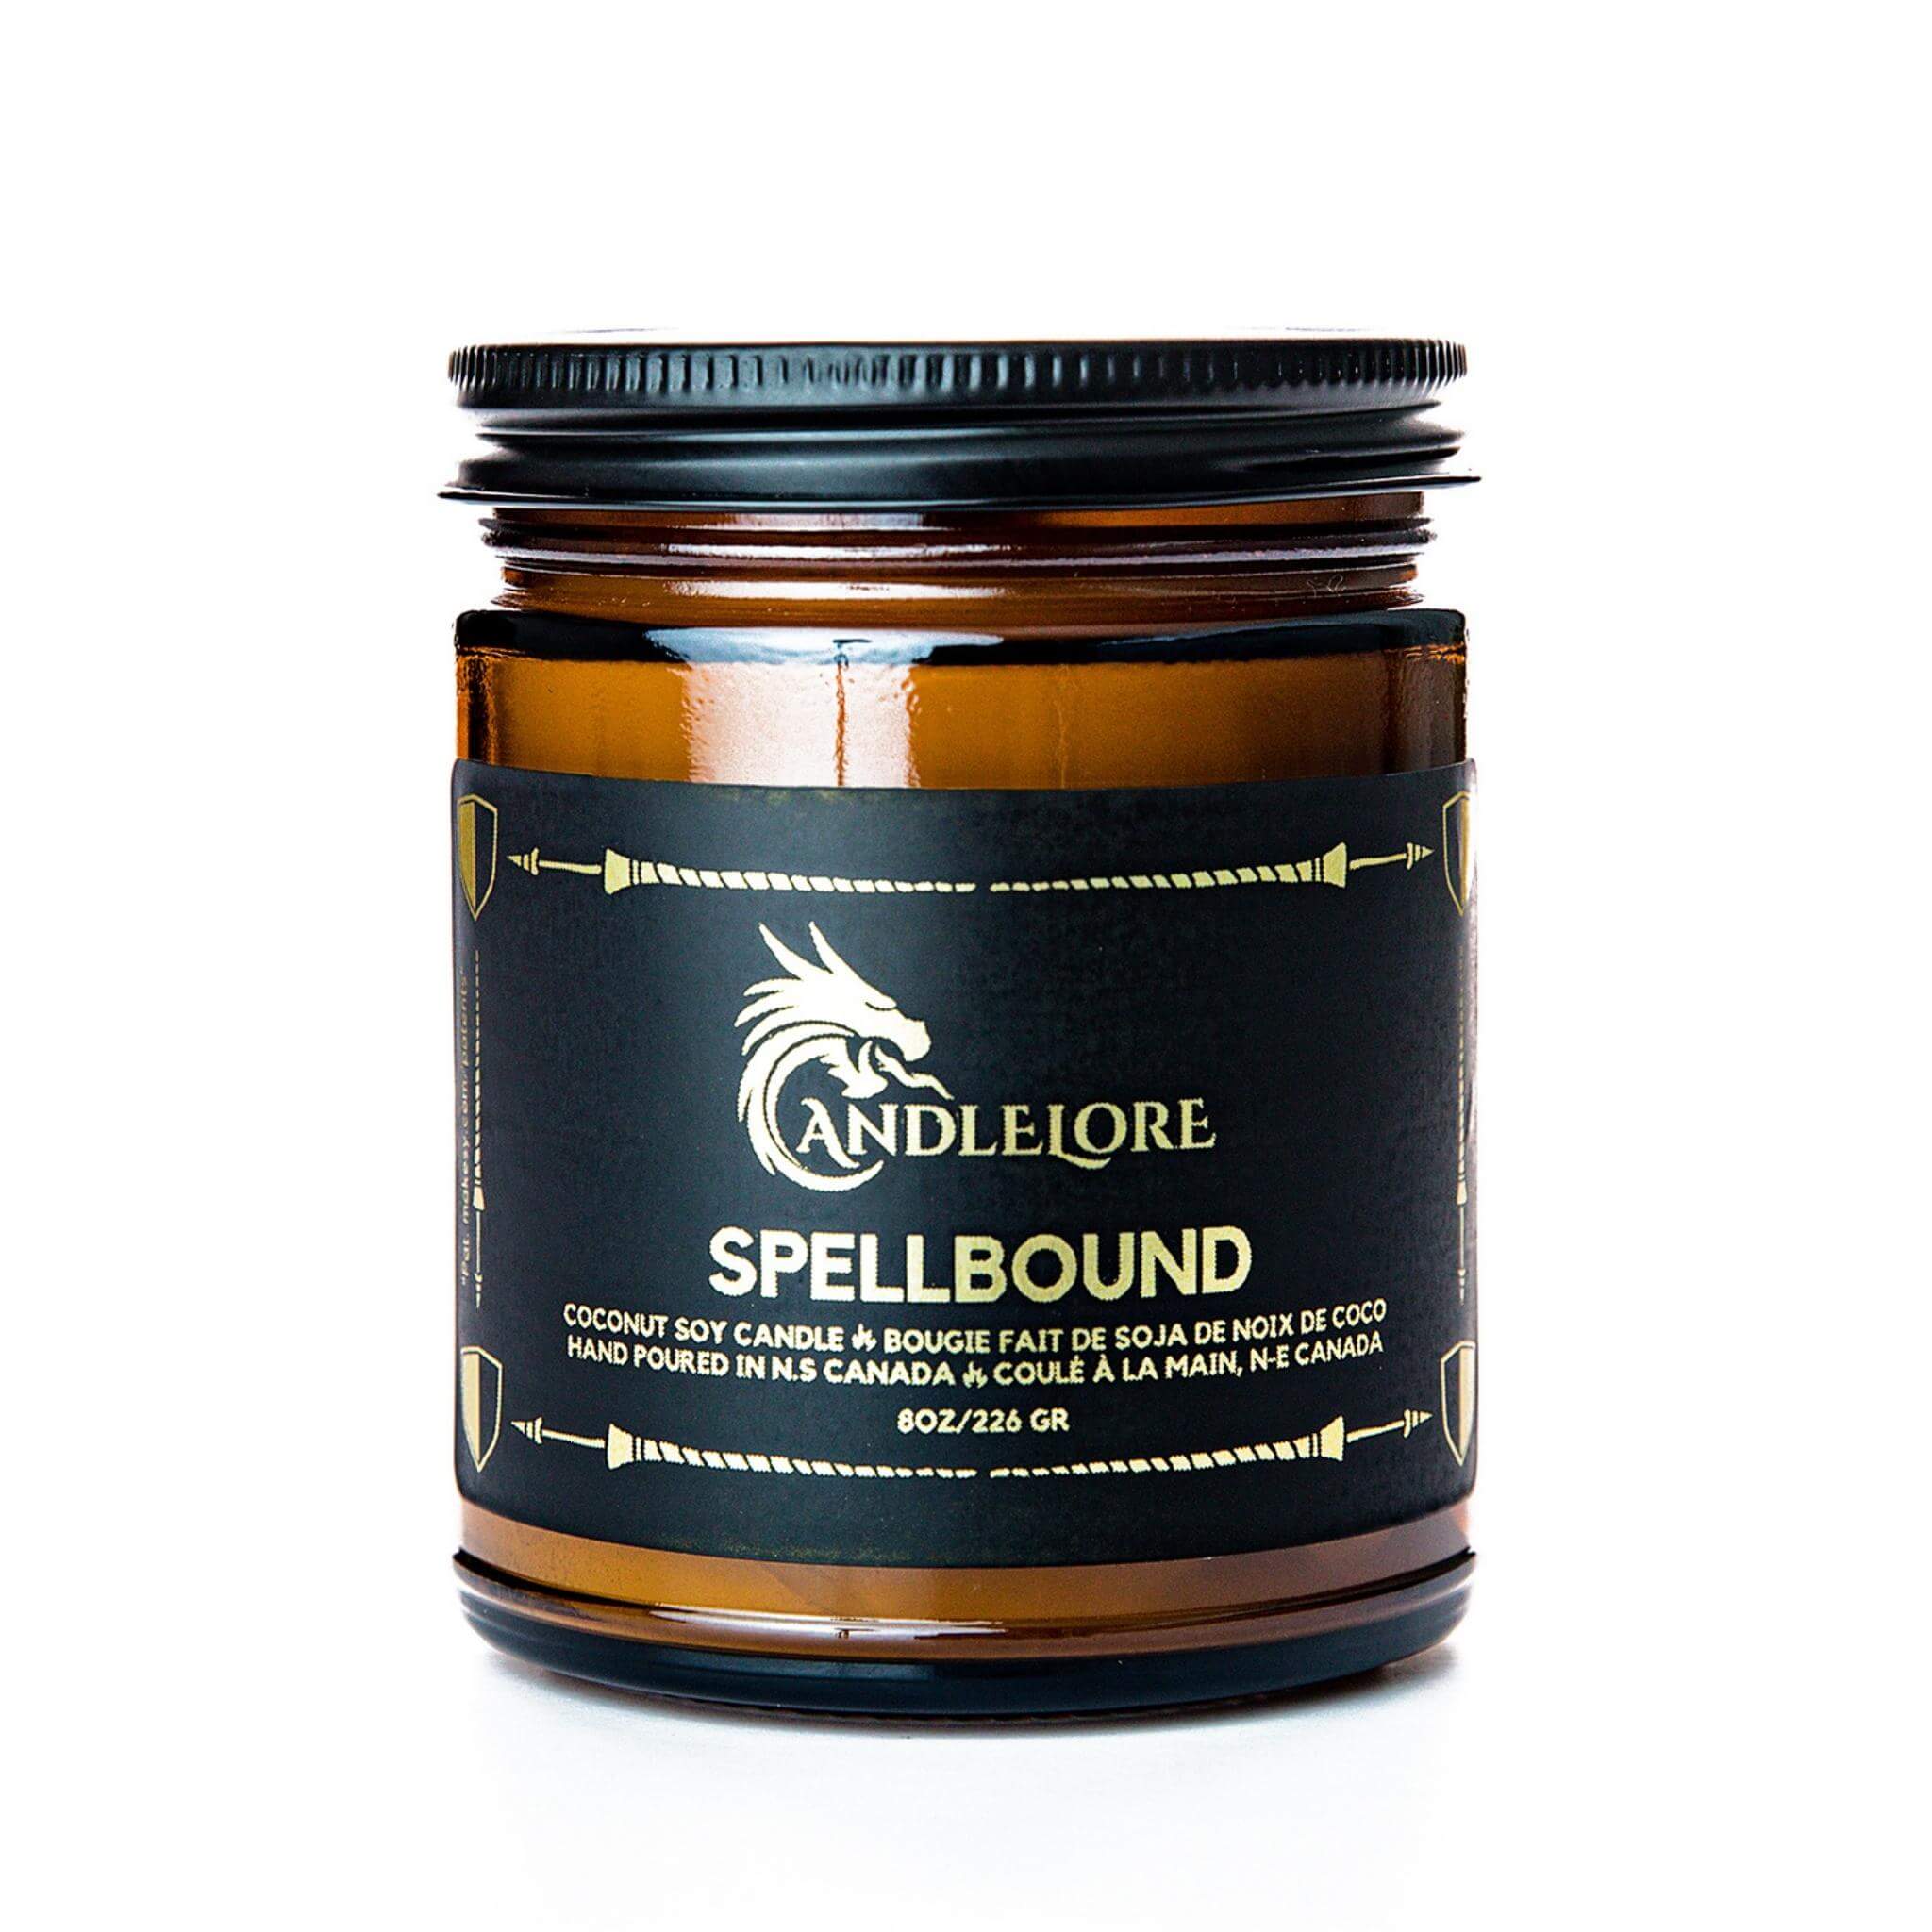 Spellbound Magic Candle | Kessel Run Games Inc. 